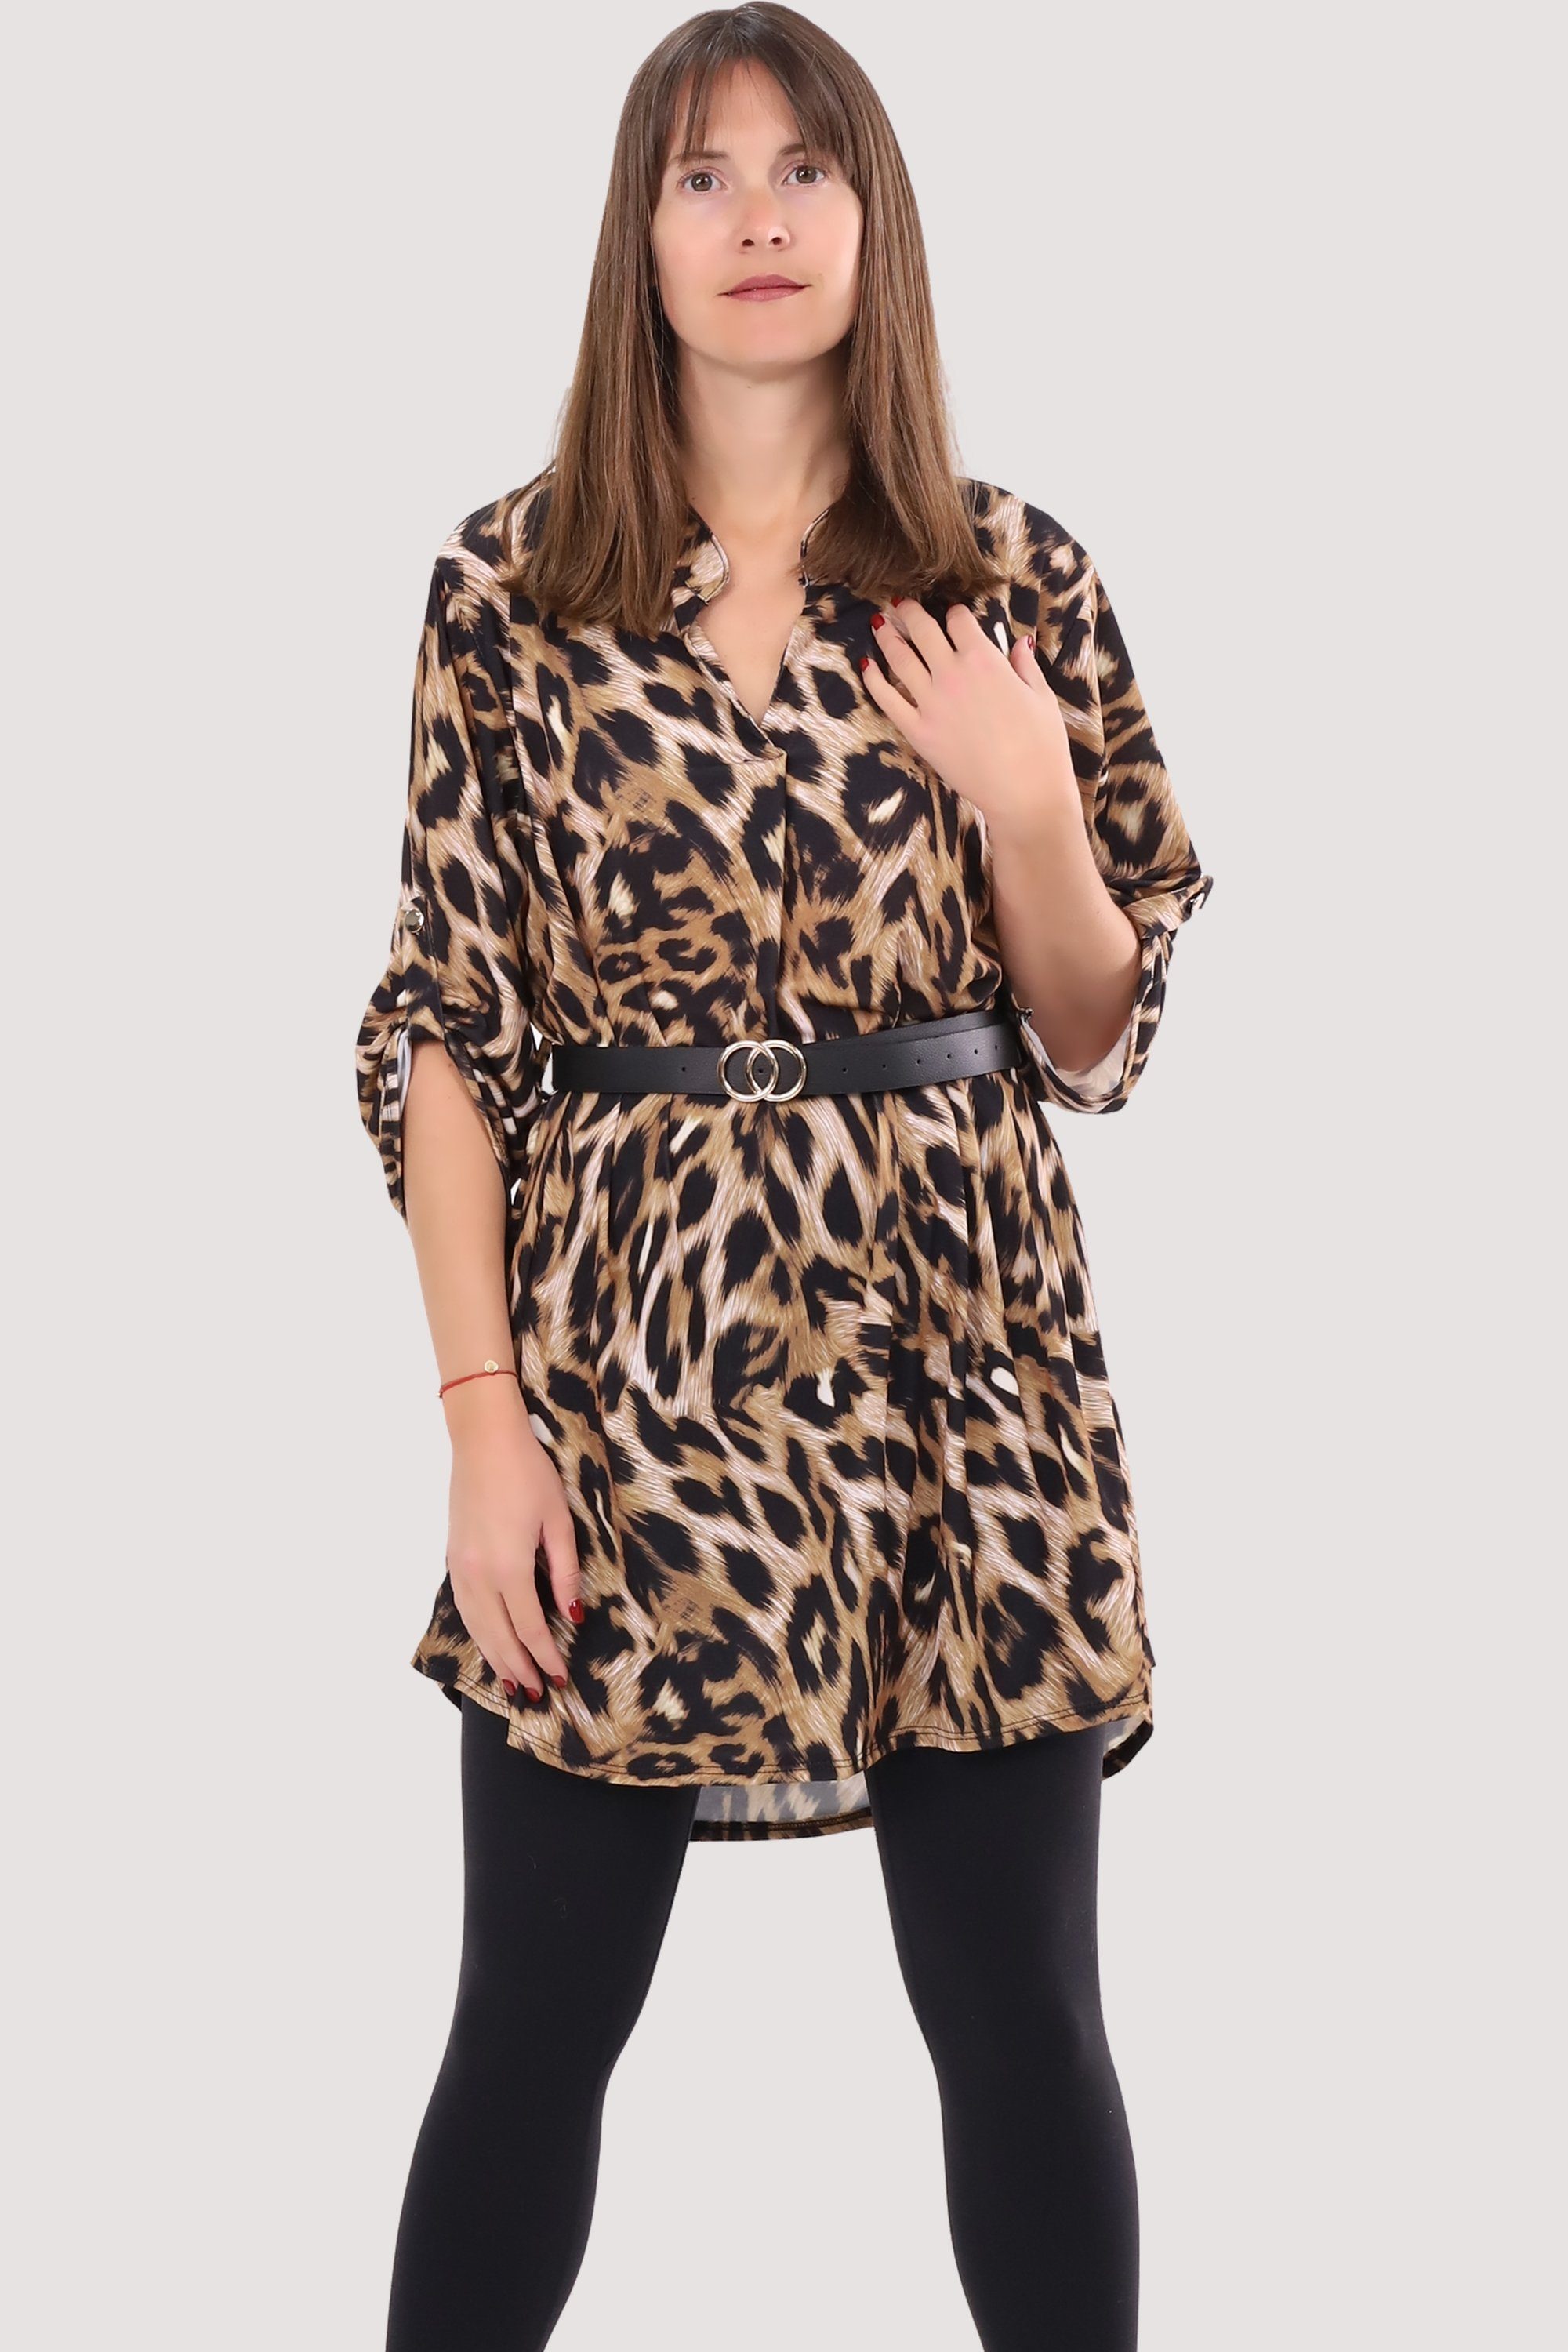 malito more than fashion Druckkleid 23203 Animalprint Kleid Tunika Bluse mit Gürtel Einheitsgröße Gepard 3 | Gemusterte Kleider